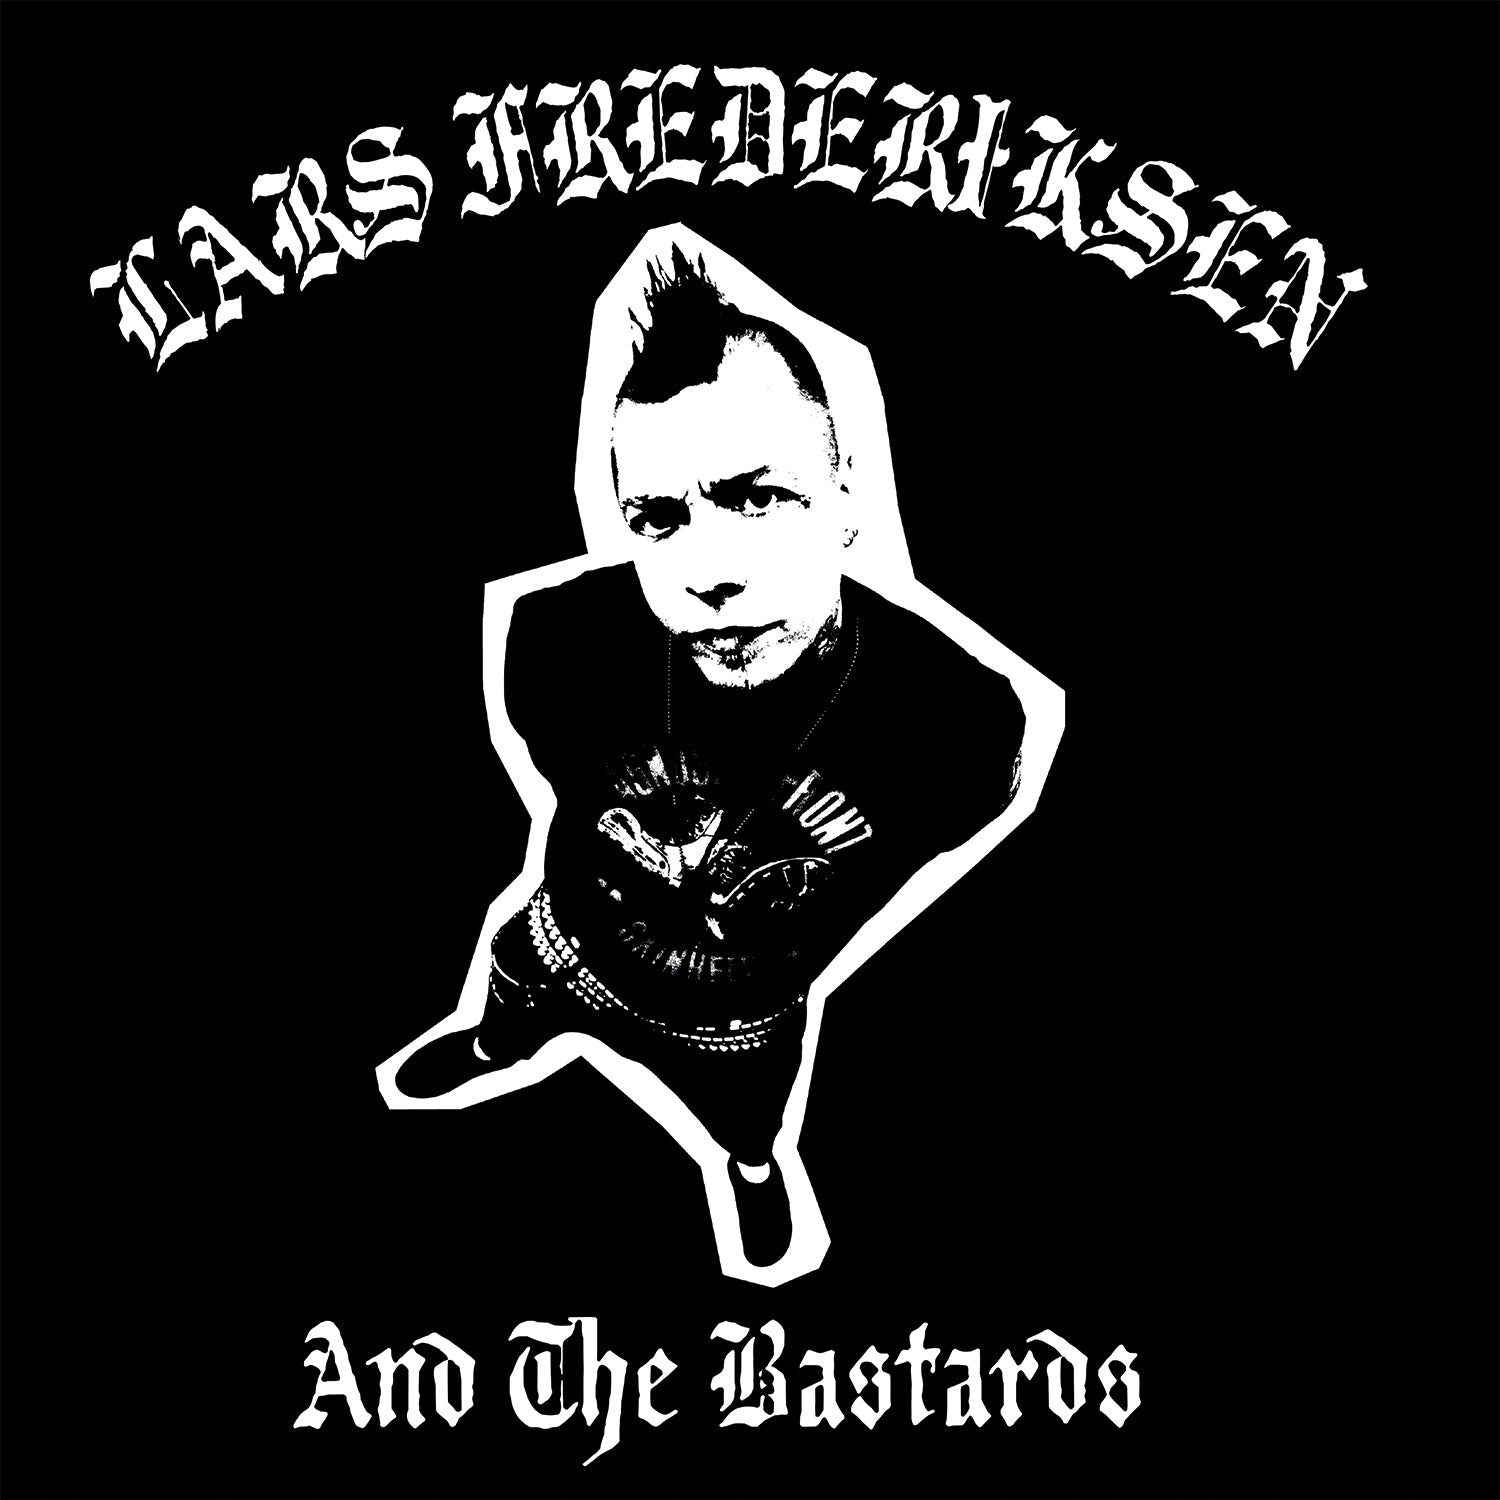 Lars Frederiksen & The Bastards - S/T Red & Black Galaxy Vinyl LP